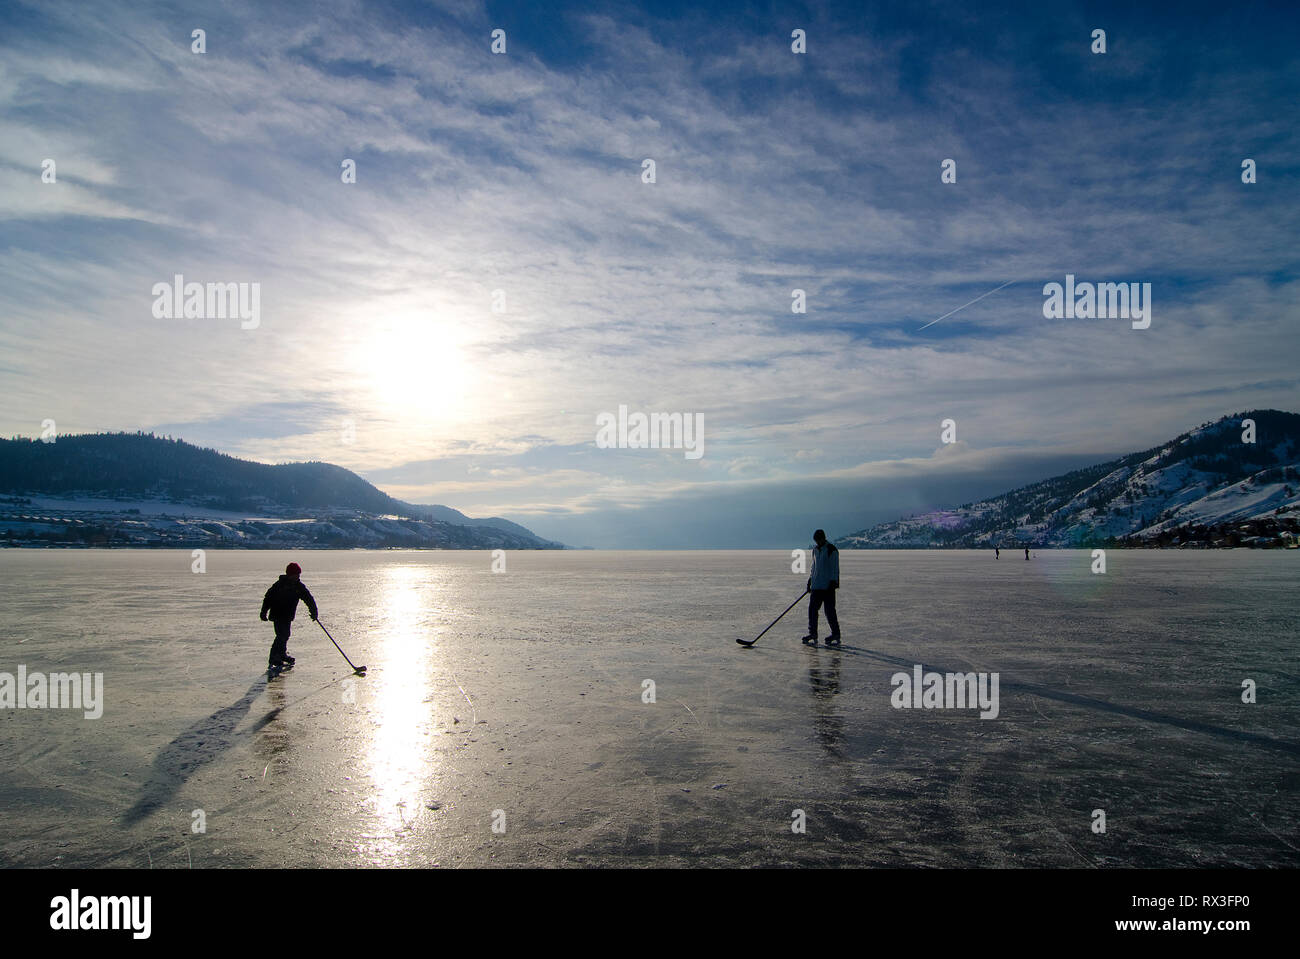 Deux personnes jouent au hockey sur la glace d'un lac Okanagan à Kin Beach à Vernon, Colombie-Britannique, Canada Banque D'Images